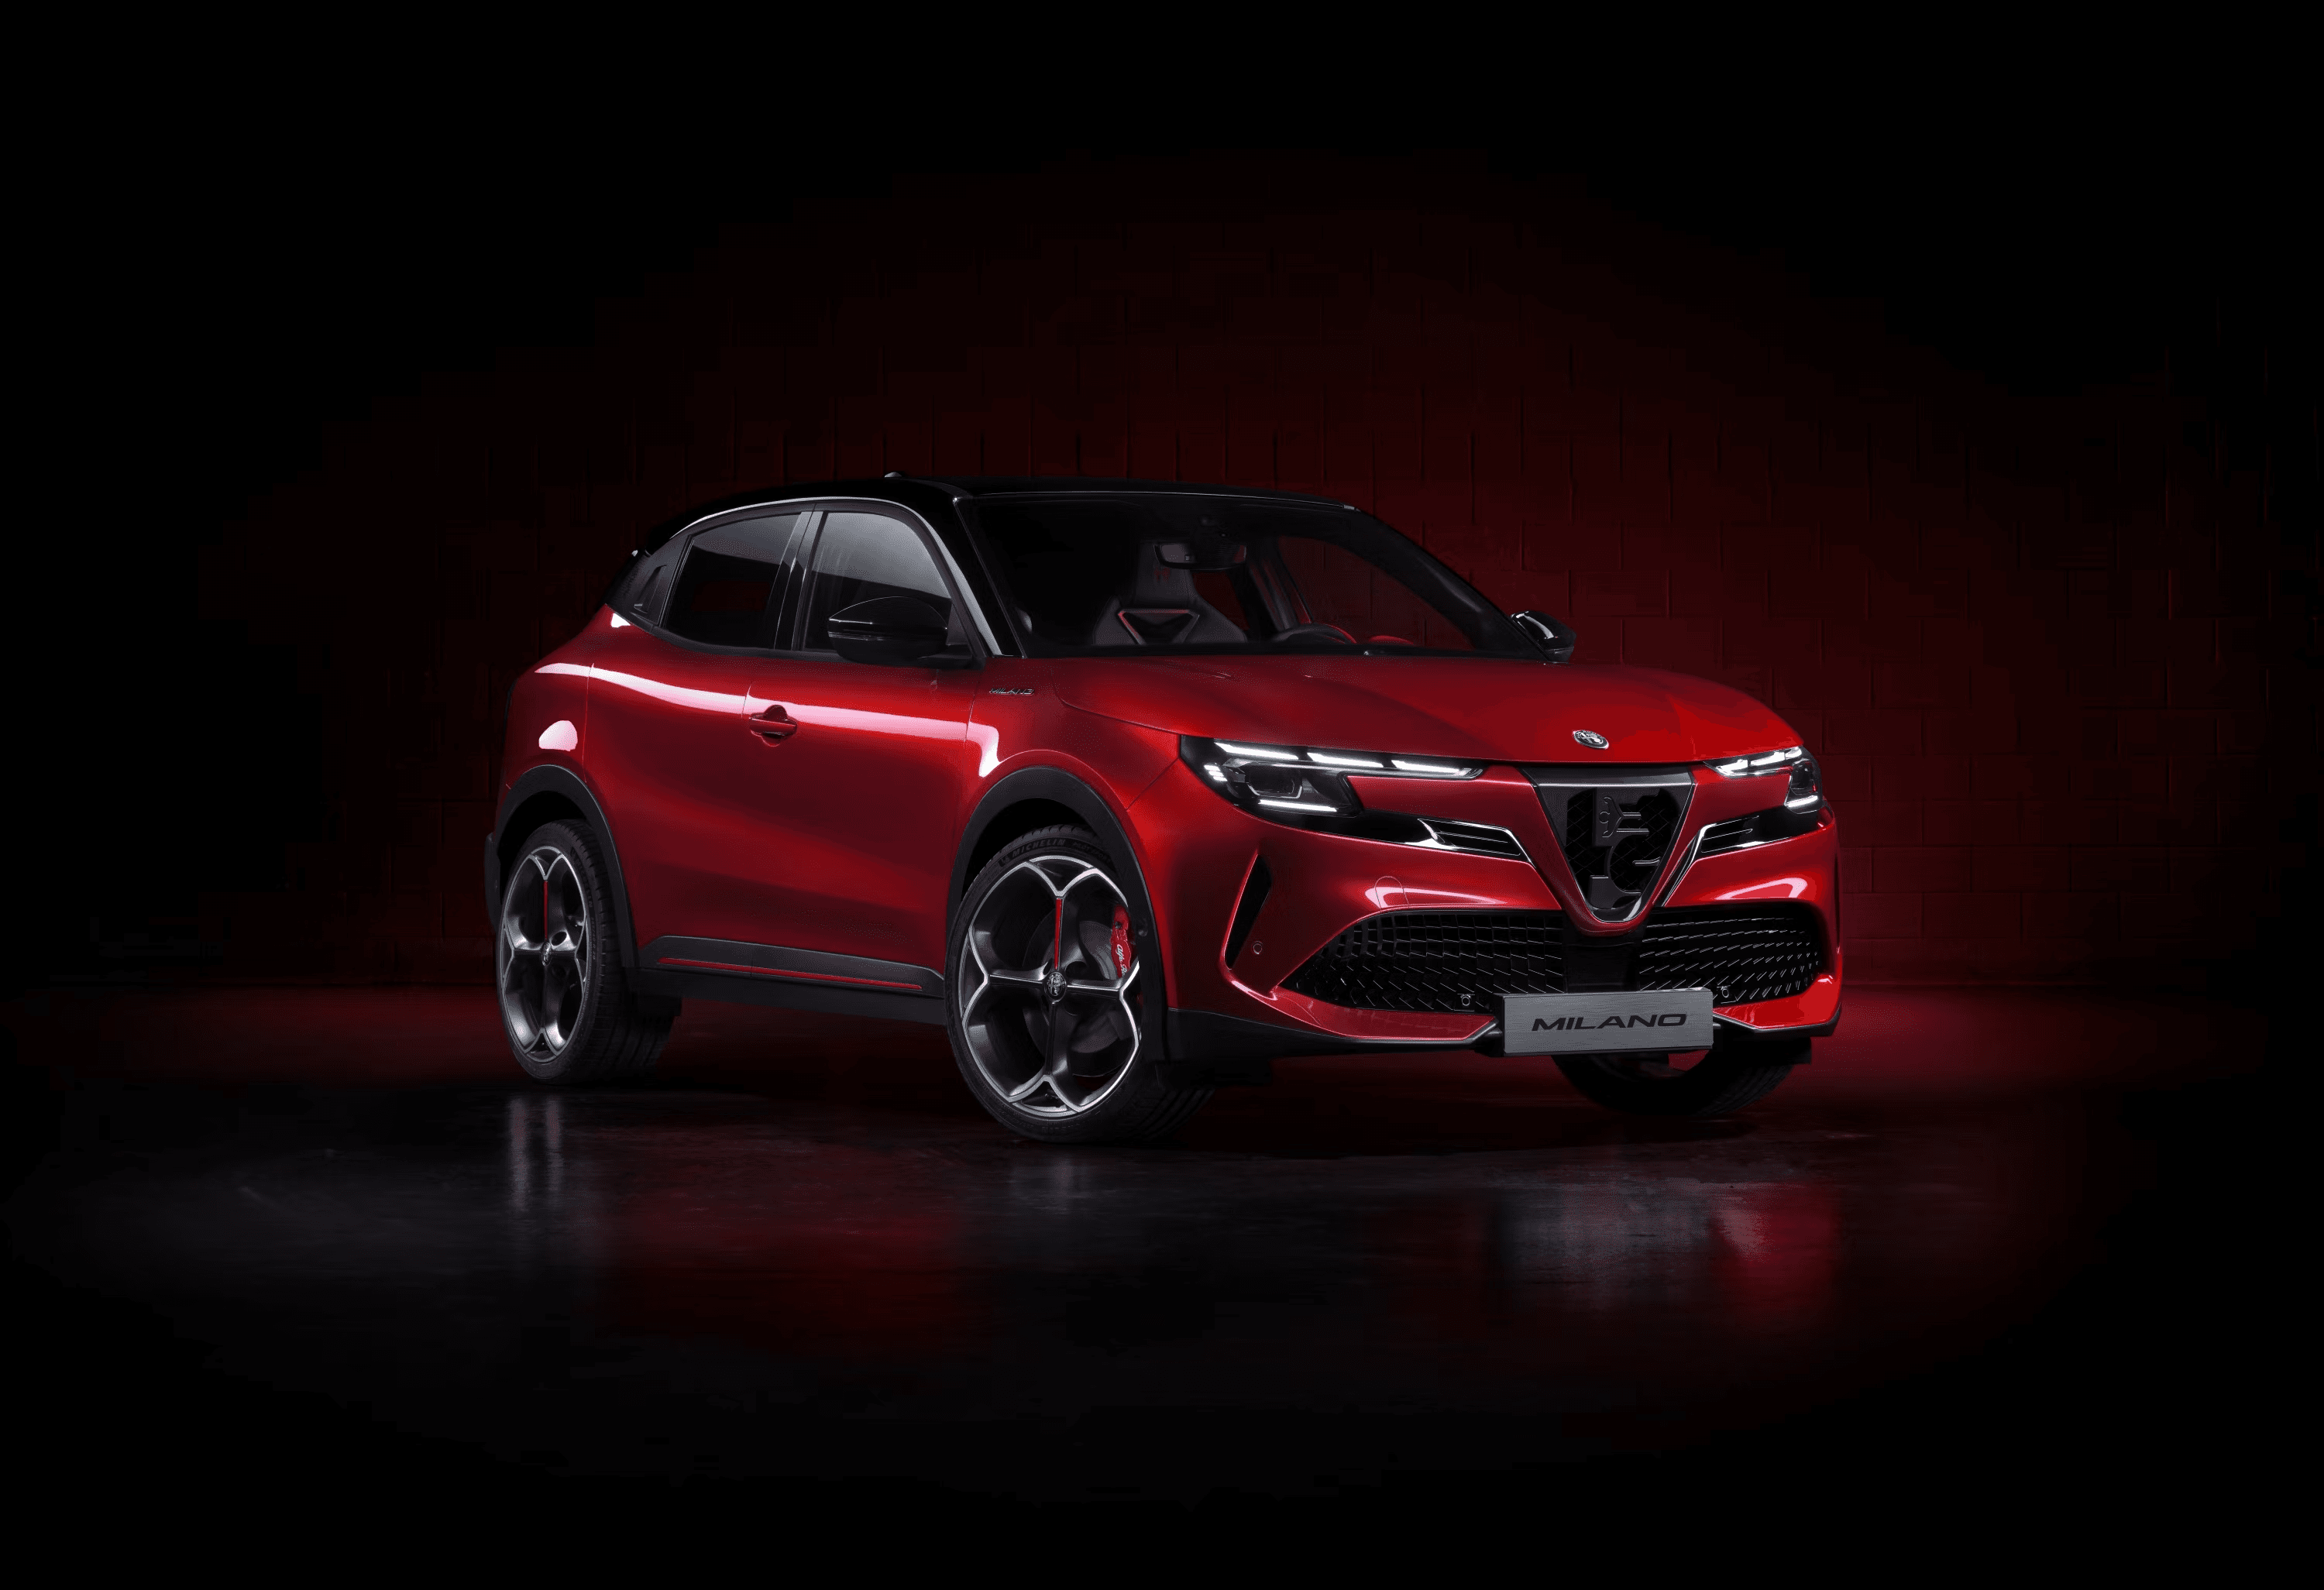 Alfa Romeo переименовала внедорожник Milano всего через несколько дней после его презентации